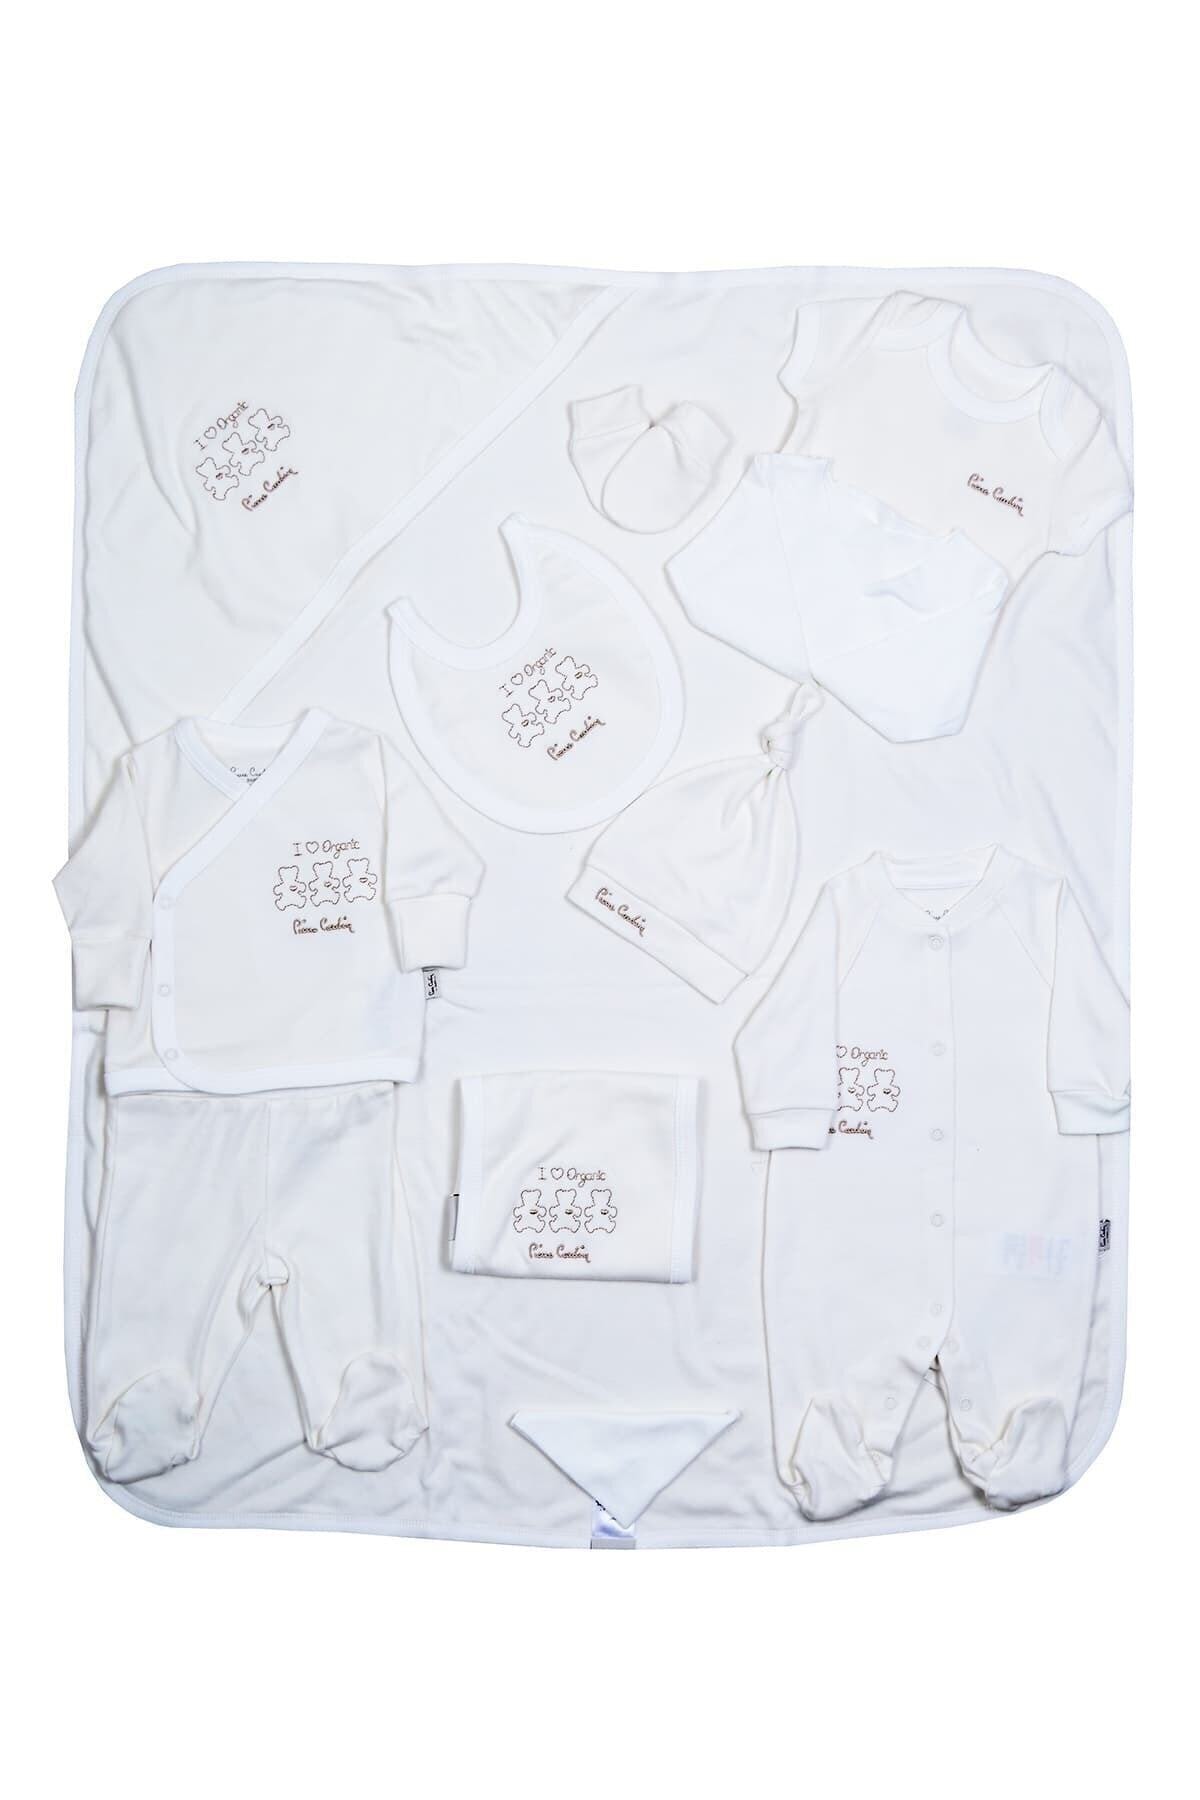 Pierre Cardin Bebek Giyim 10'lu Hastane Çıkış Seti Organik Ekru